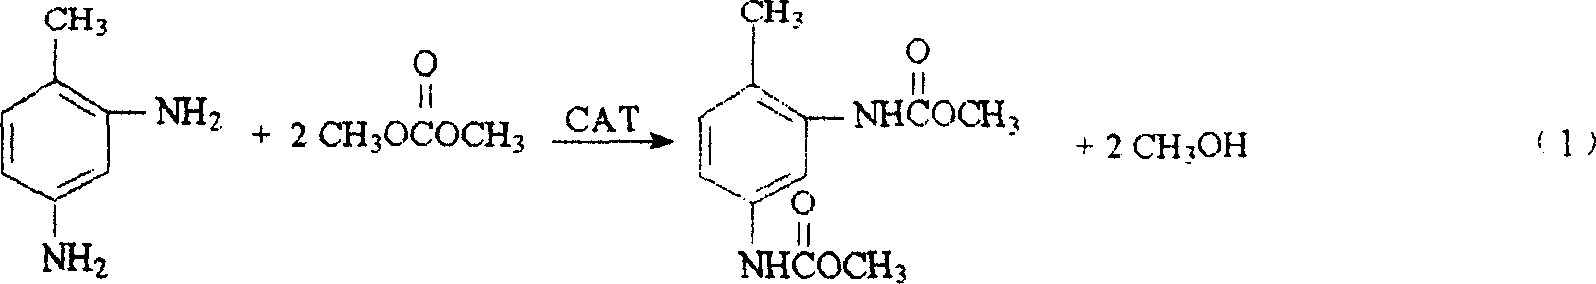 Method for preparing 2,4-toluene diamino menthyl formate